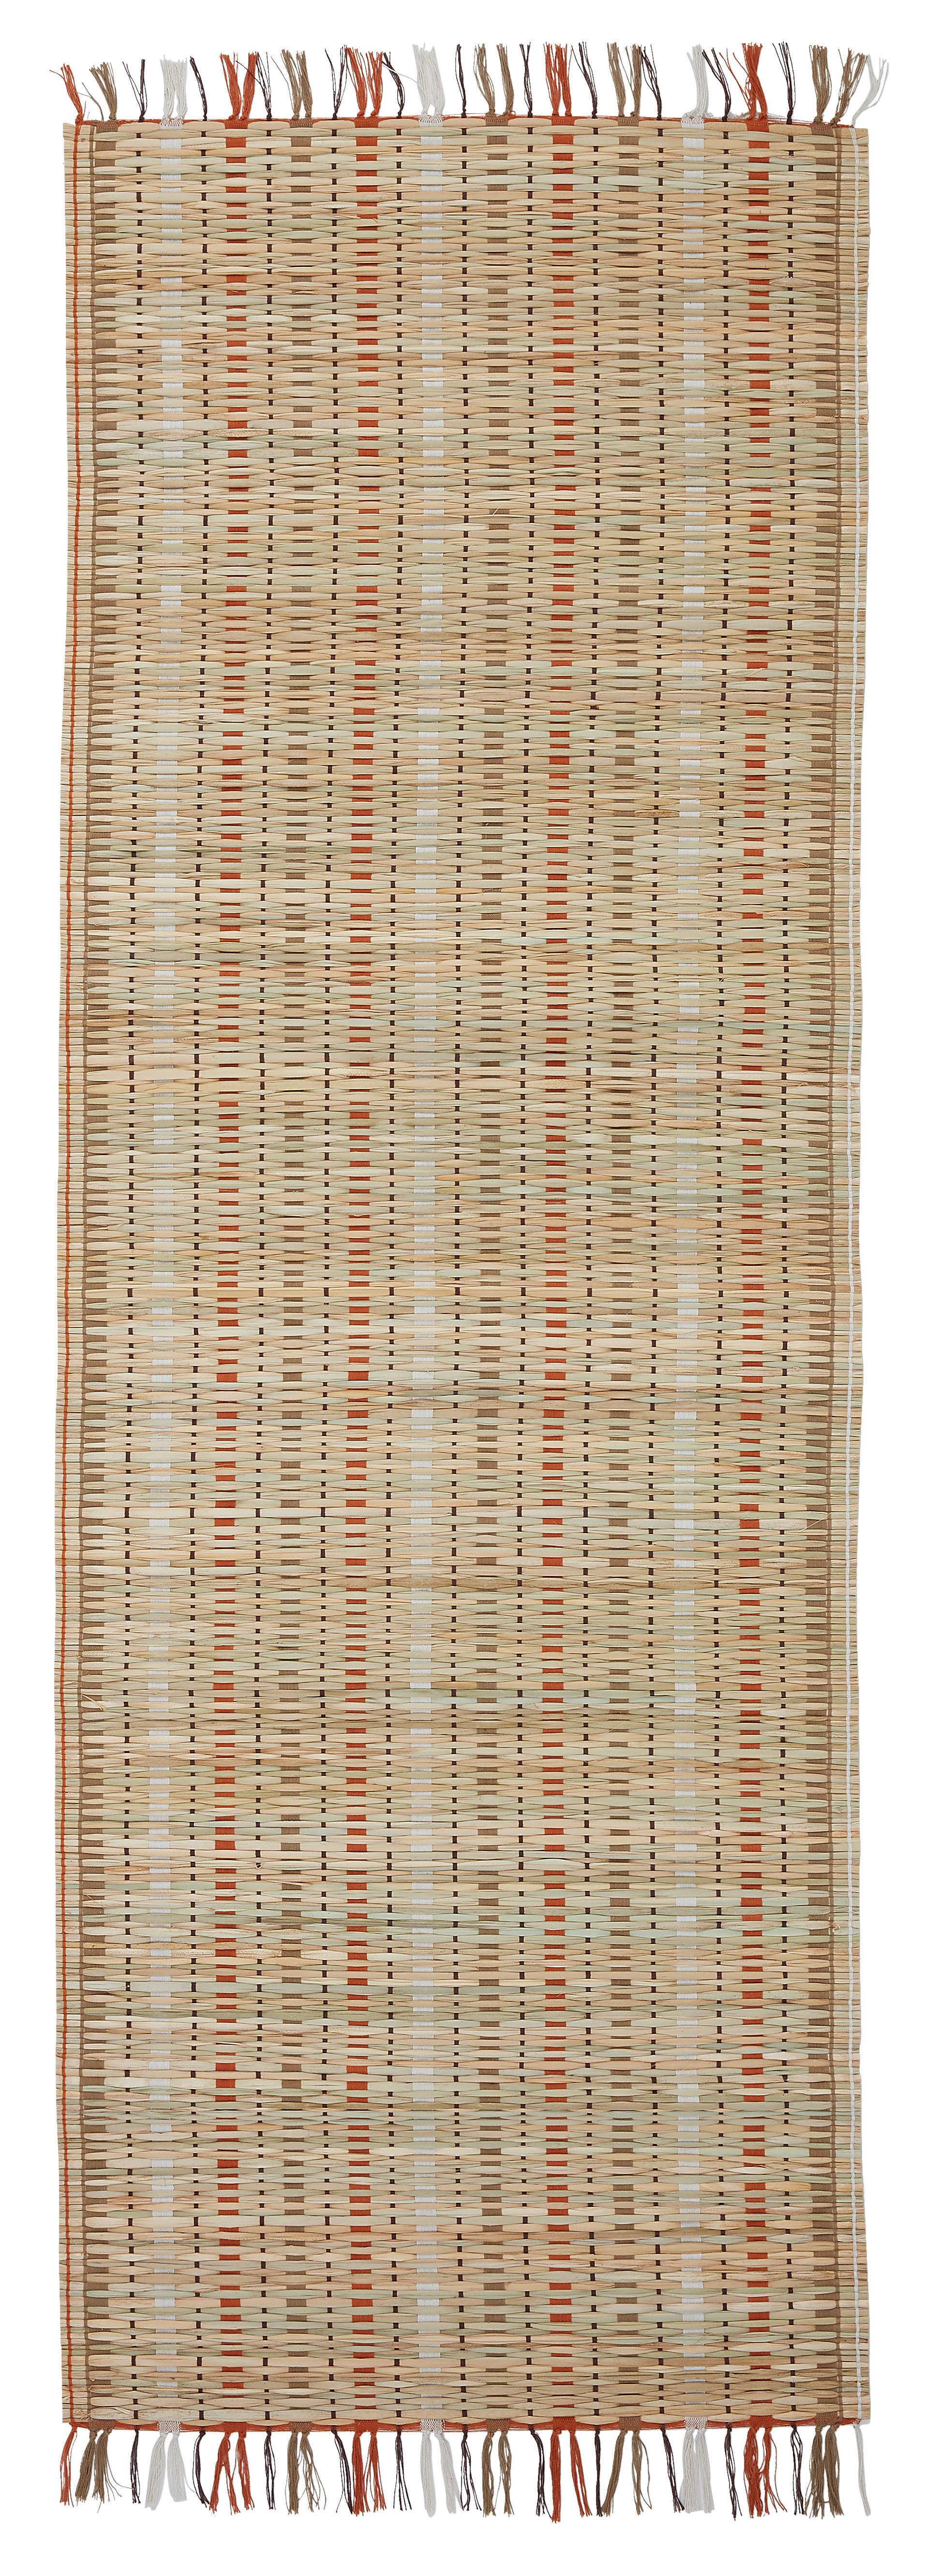 Plážová Podložka Eularia, 65/100cm - vícebarevná, Moderní, textil (65/180cm) - Modern Living